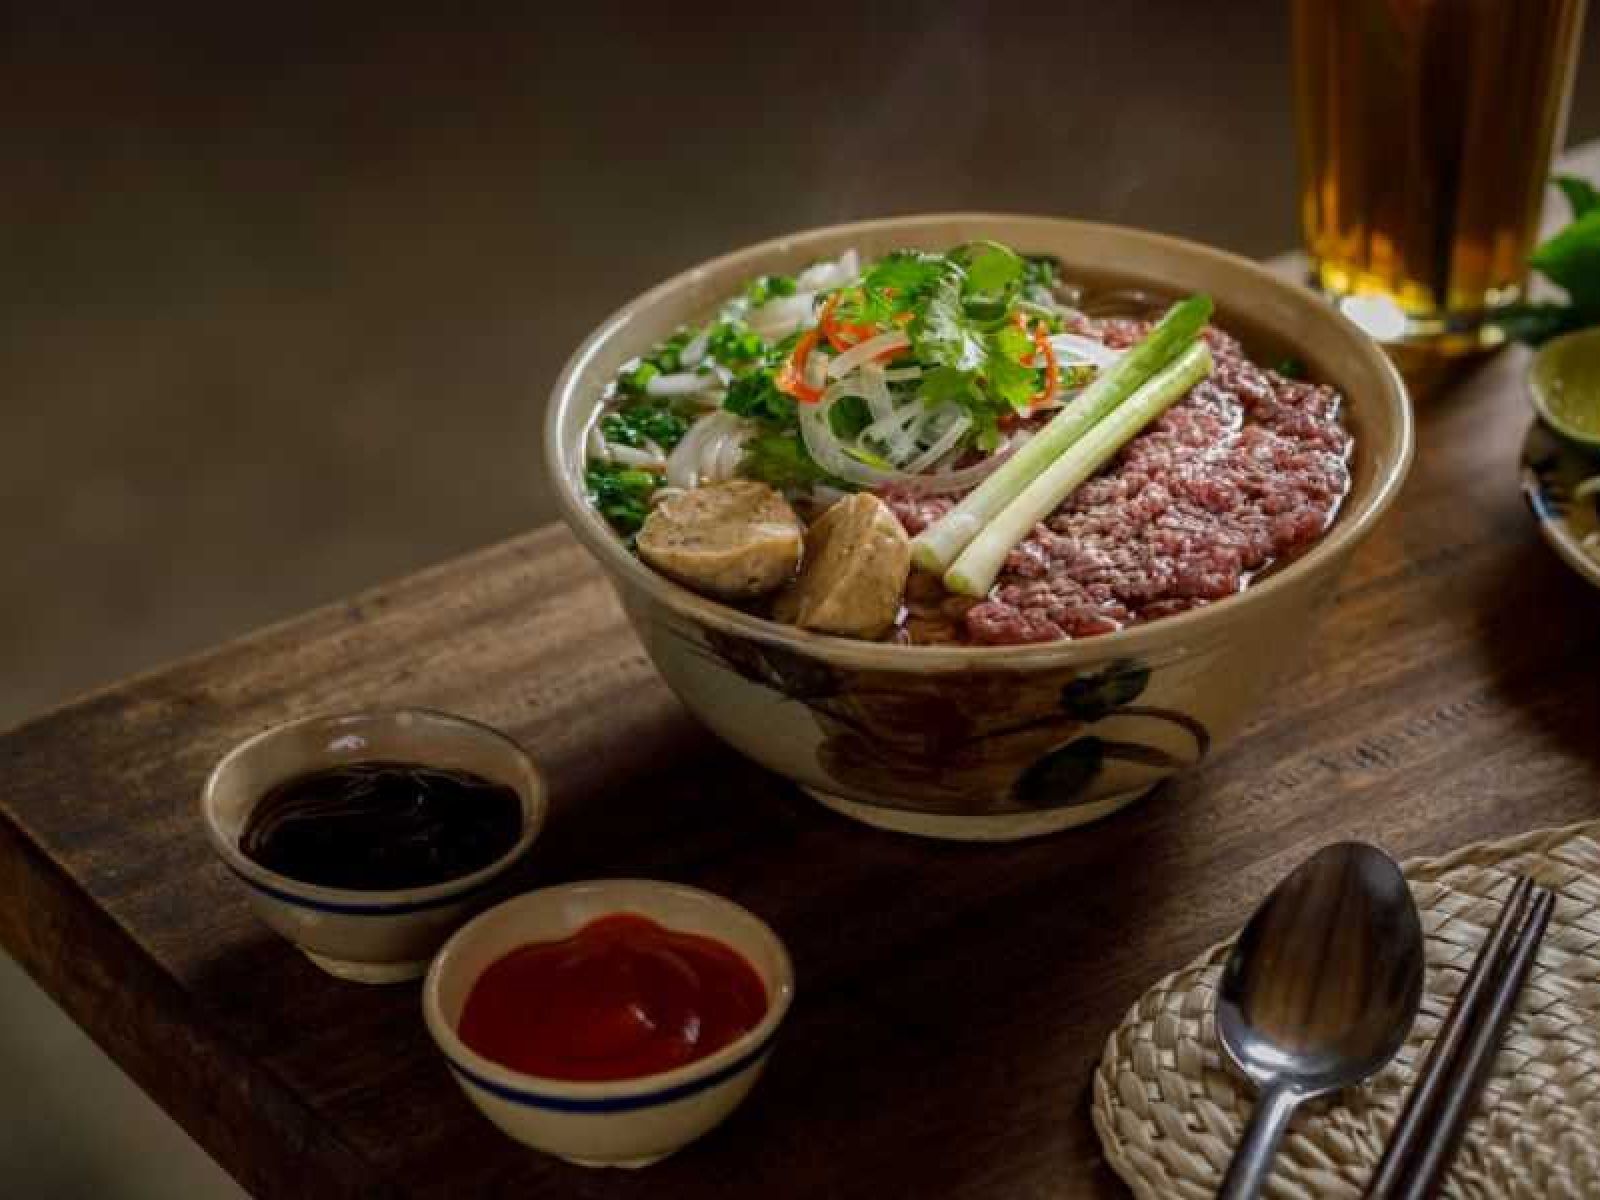 Vietnamese Pho noodles